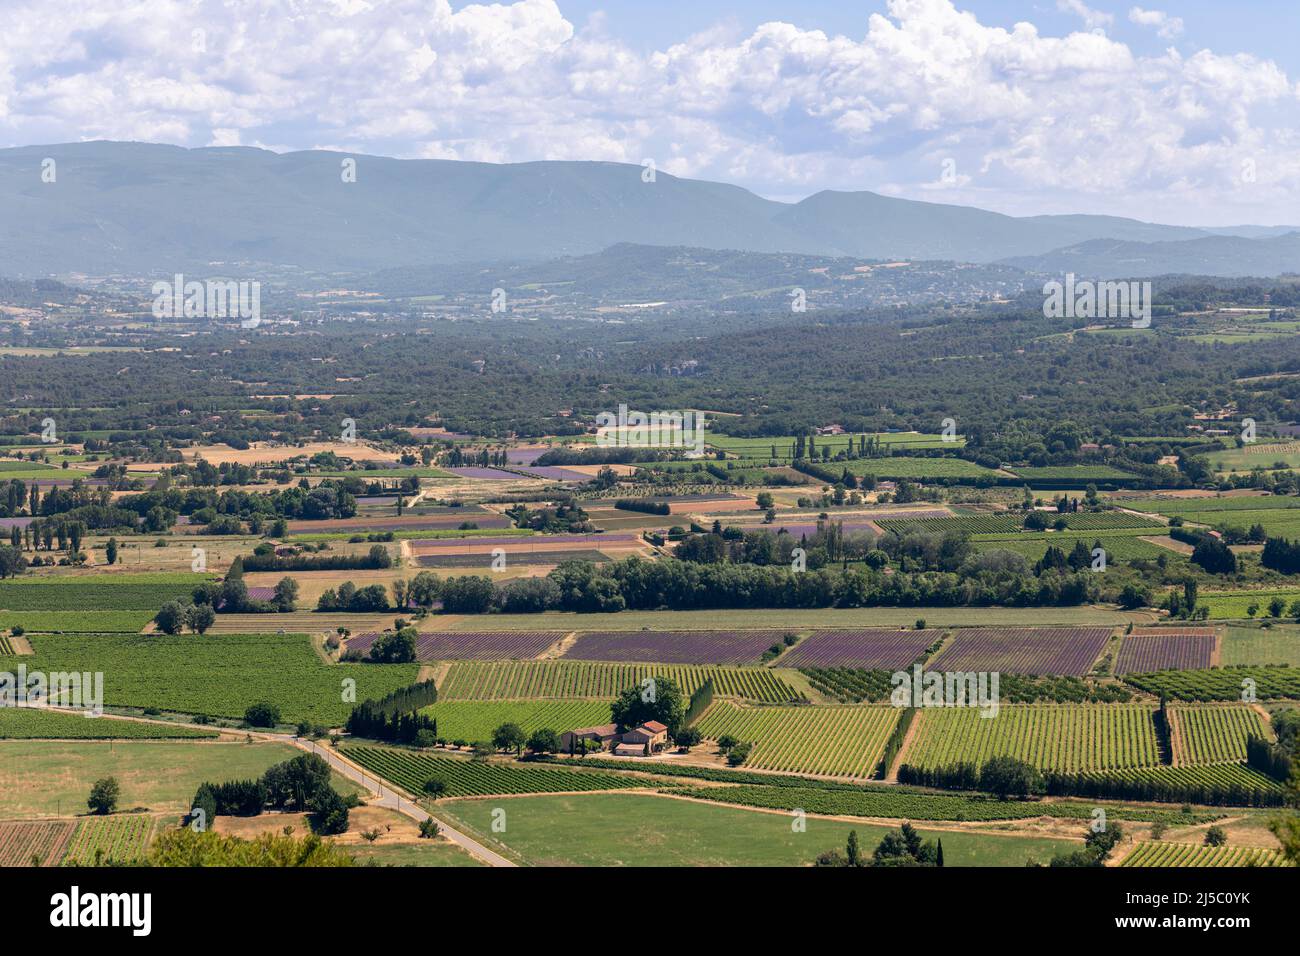 Vista panoramica della valle, piantagioni di frutta coltivata, foreste, fattorie, montagne all'orizzonte dal borgo medievale di Lacoste, Vaucluse, Francia Foto Stock